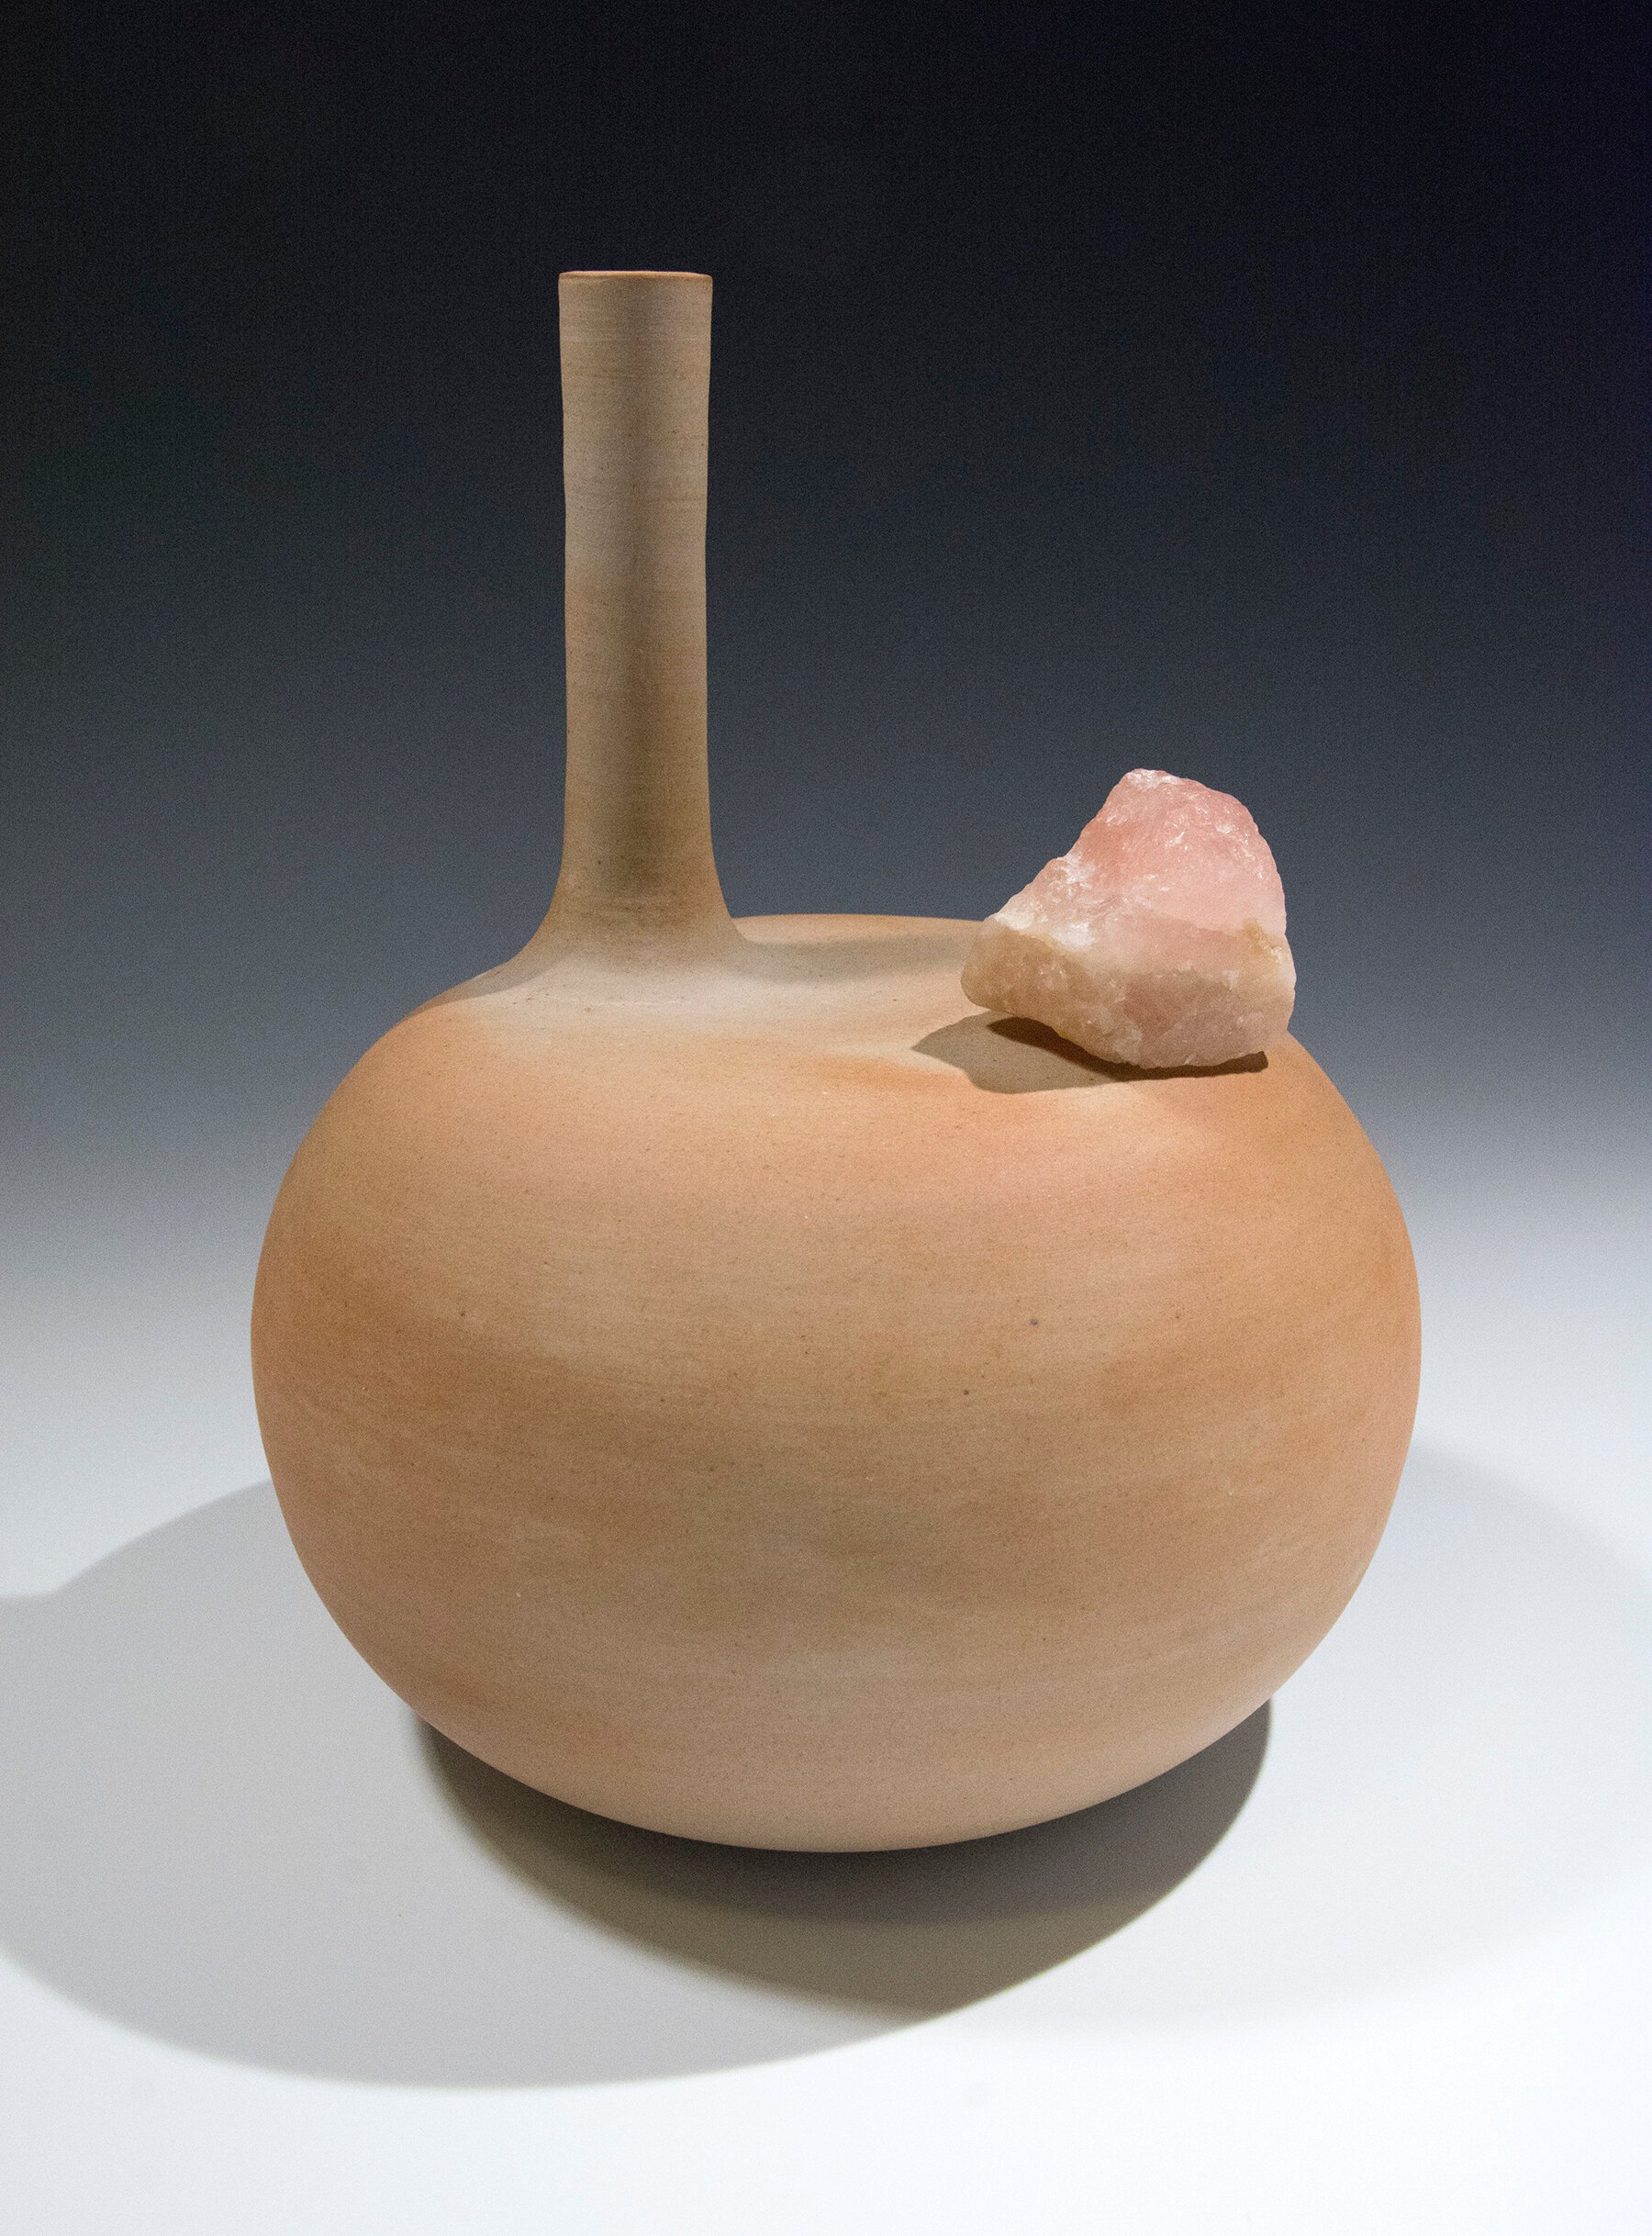   Vase with Freckled Shoulder  (for Rose), stoneware and rose quartz 